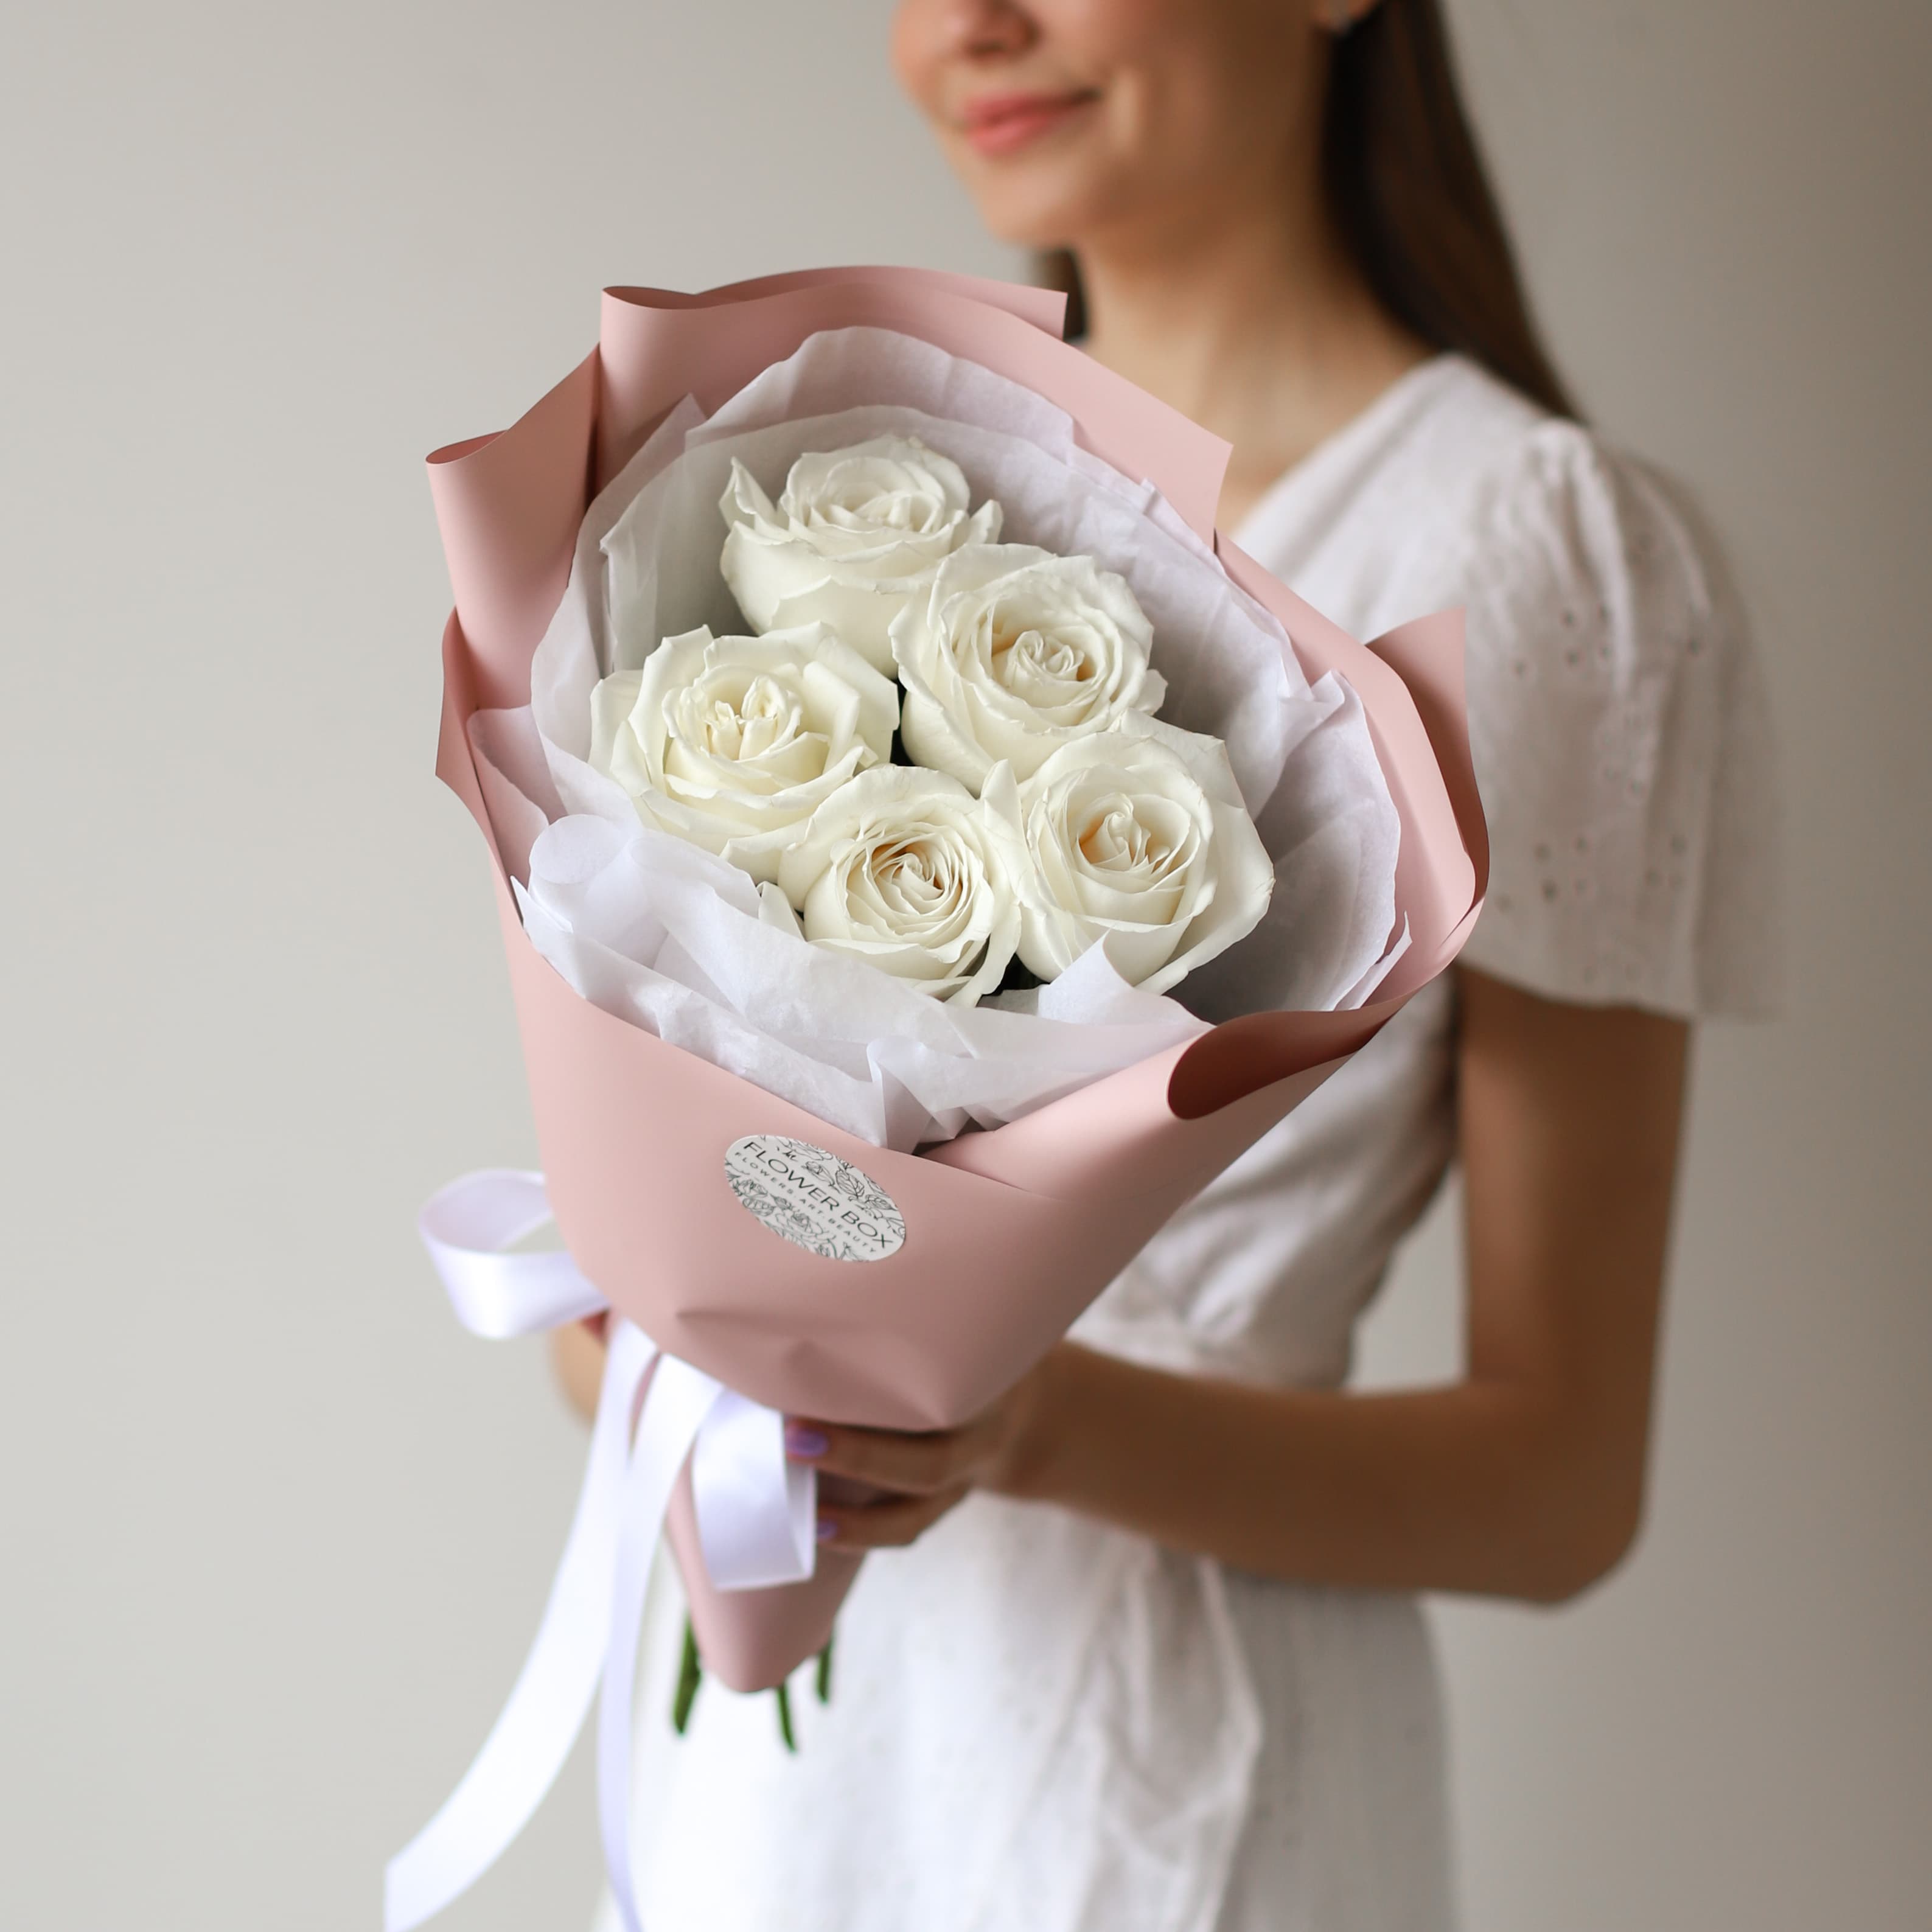 Белые розы в нежном оформлении (5 шт) №1574 - Фото 41